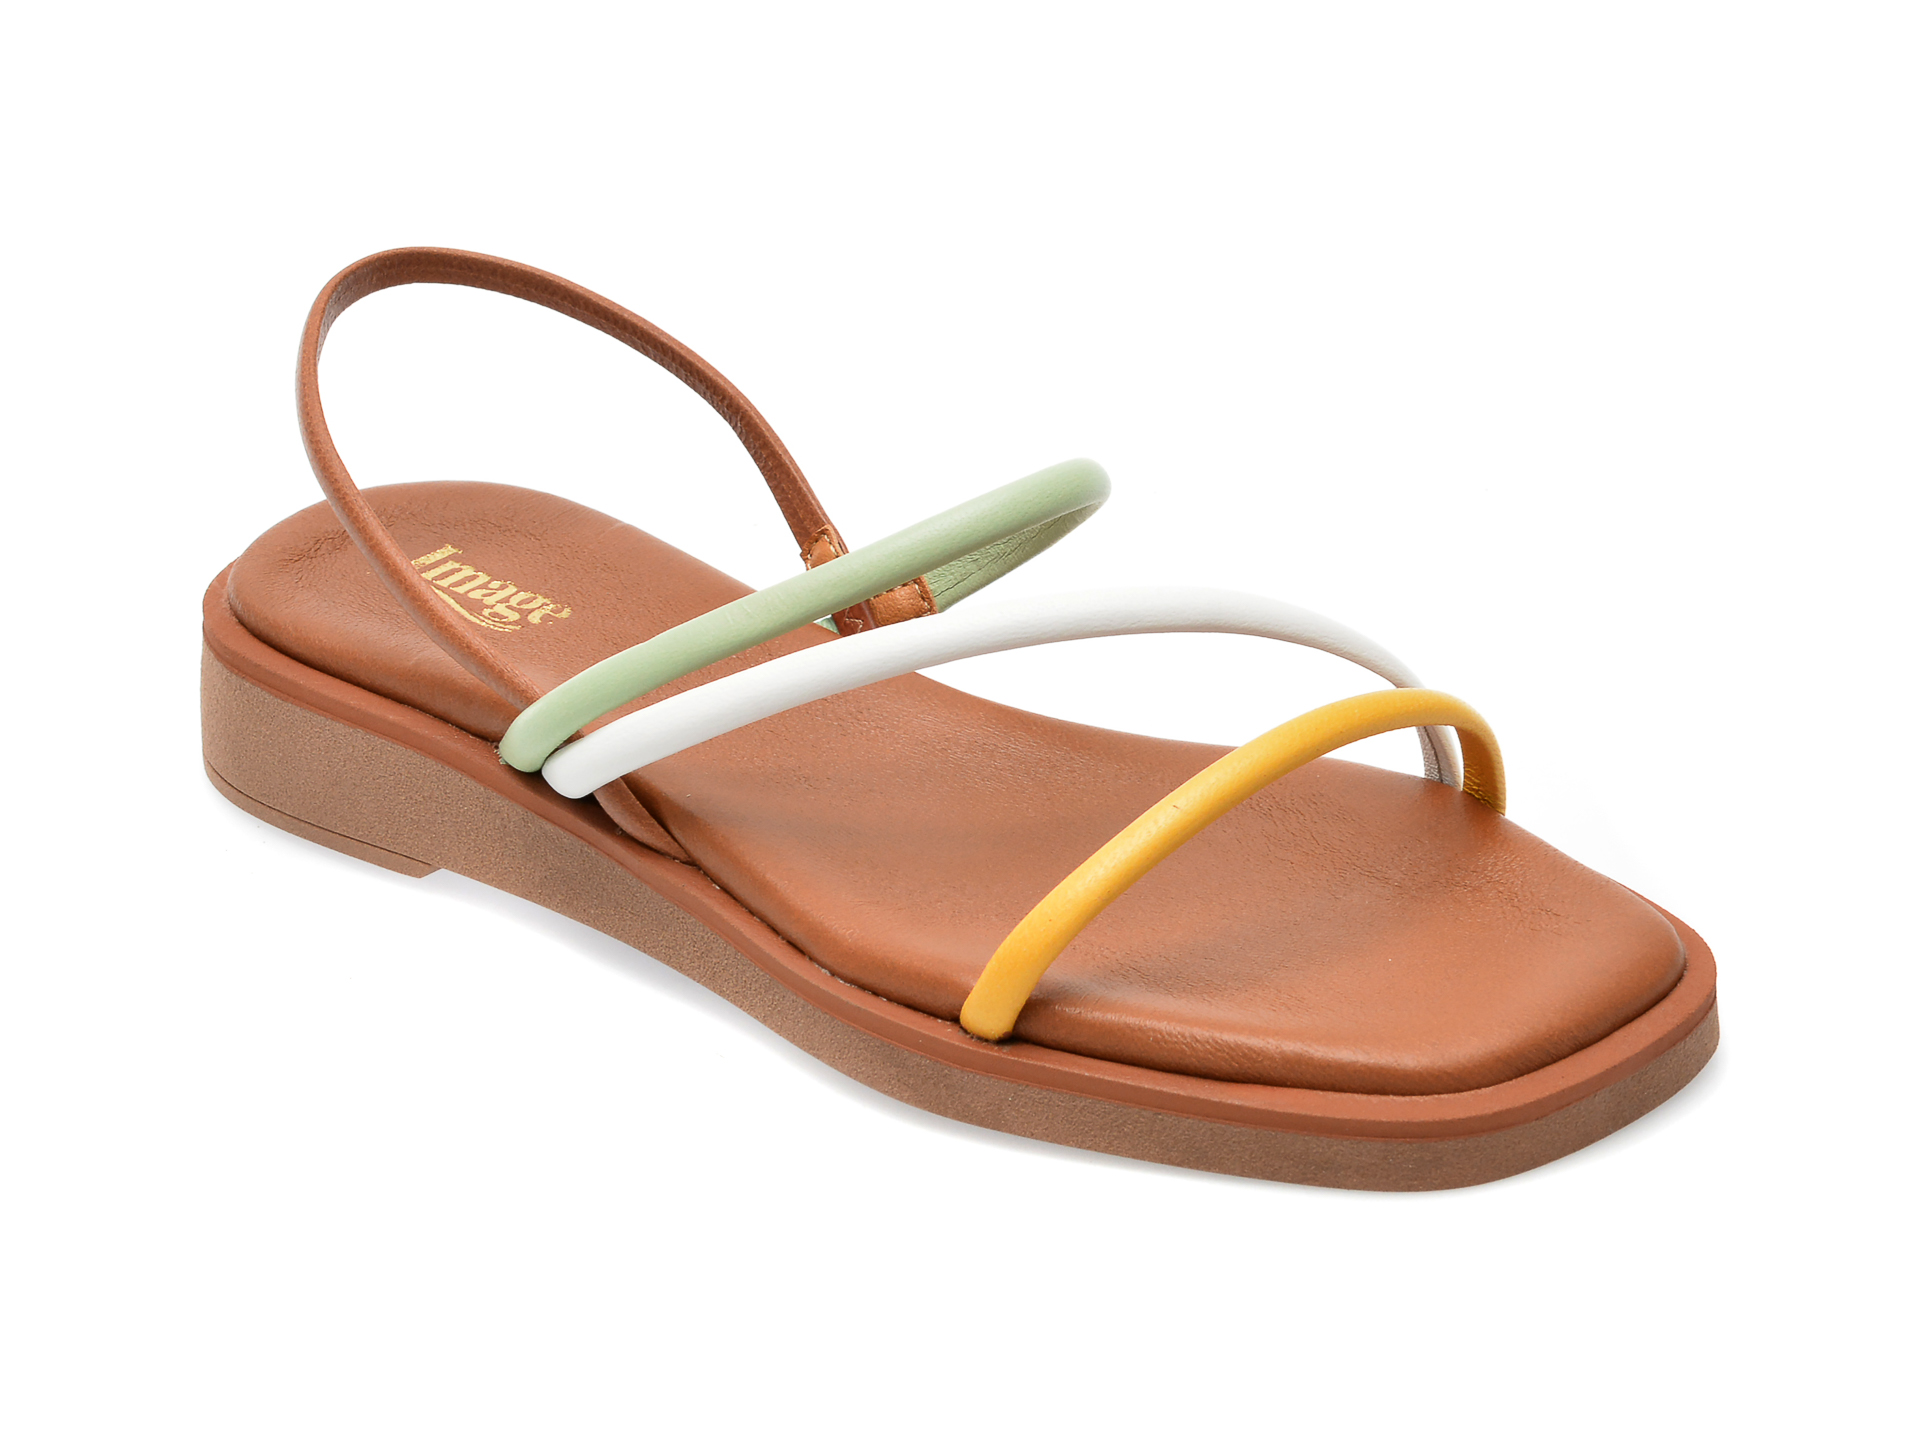 Sandale IMAGE multicolor, CAMILA, din piele naturala /femei/sandale imagine noua